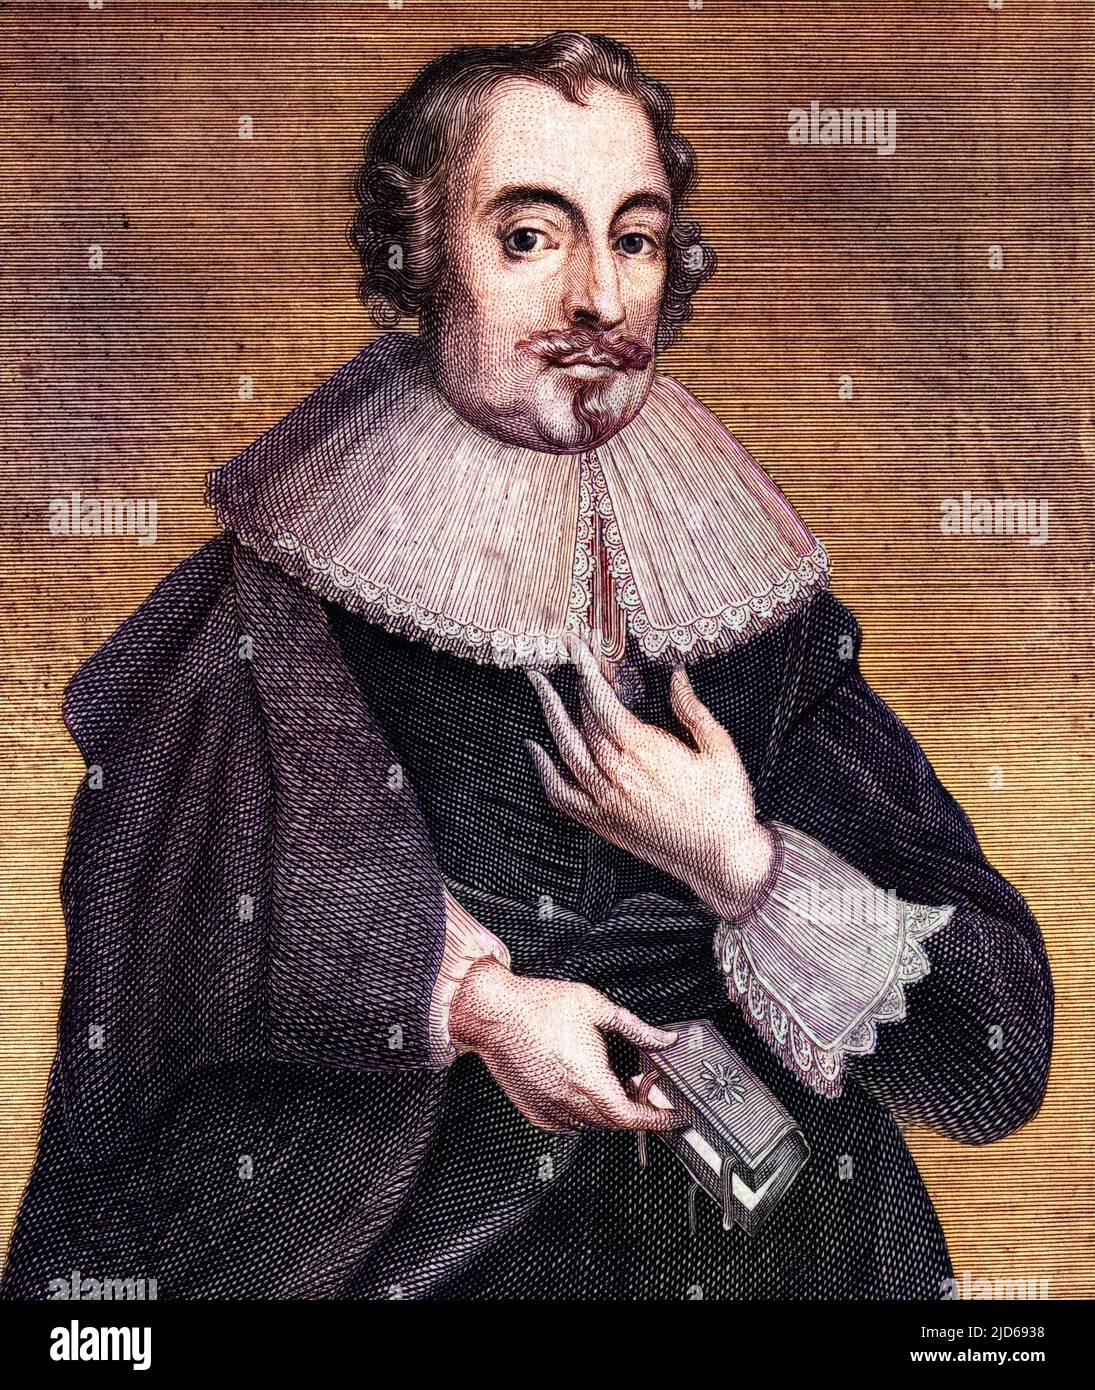 JOHN HARRISON (1579 - 1656), Magistrat und Philanthropist von Leeds. Kolorierte Version von : 10160427 Stockfoto